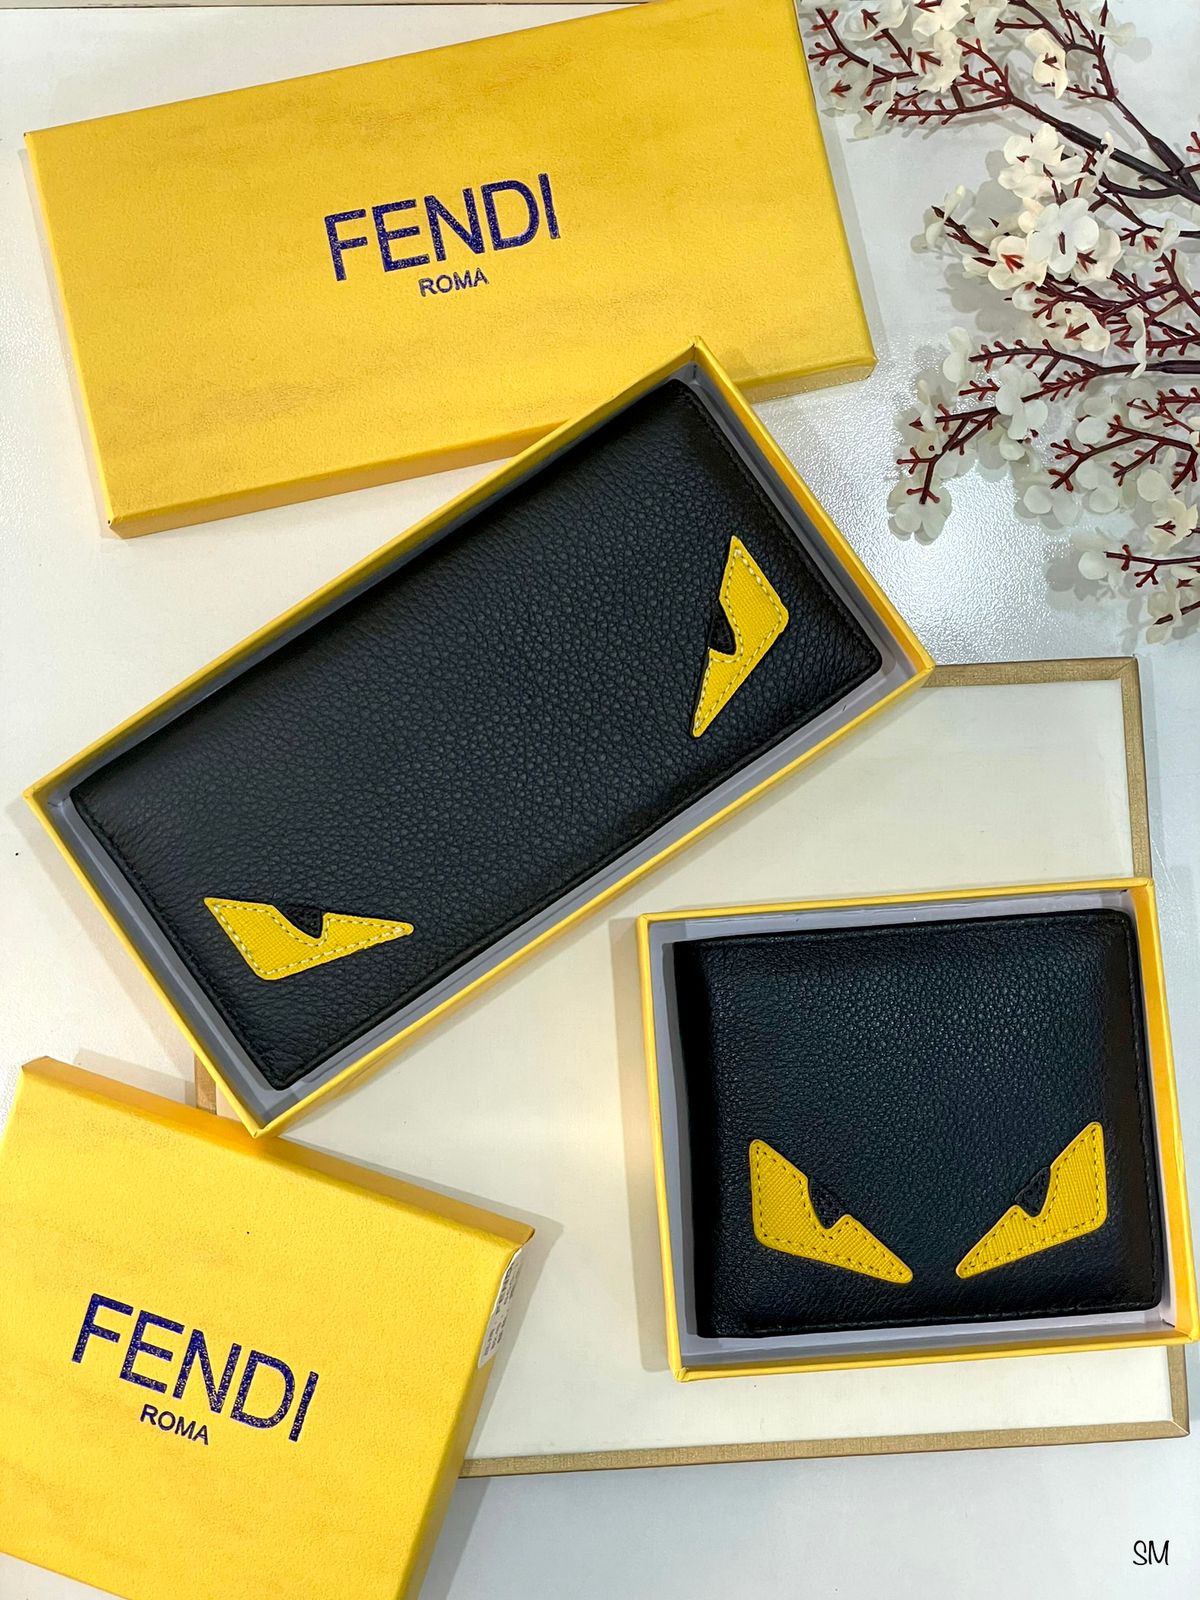 FENDI – Global Store